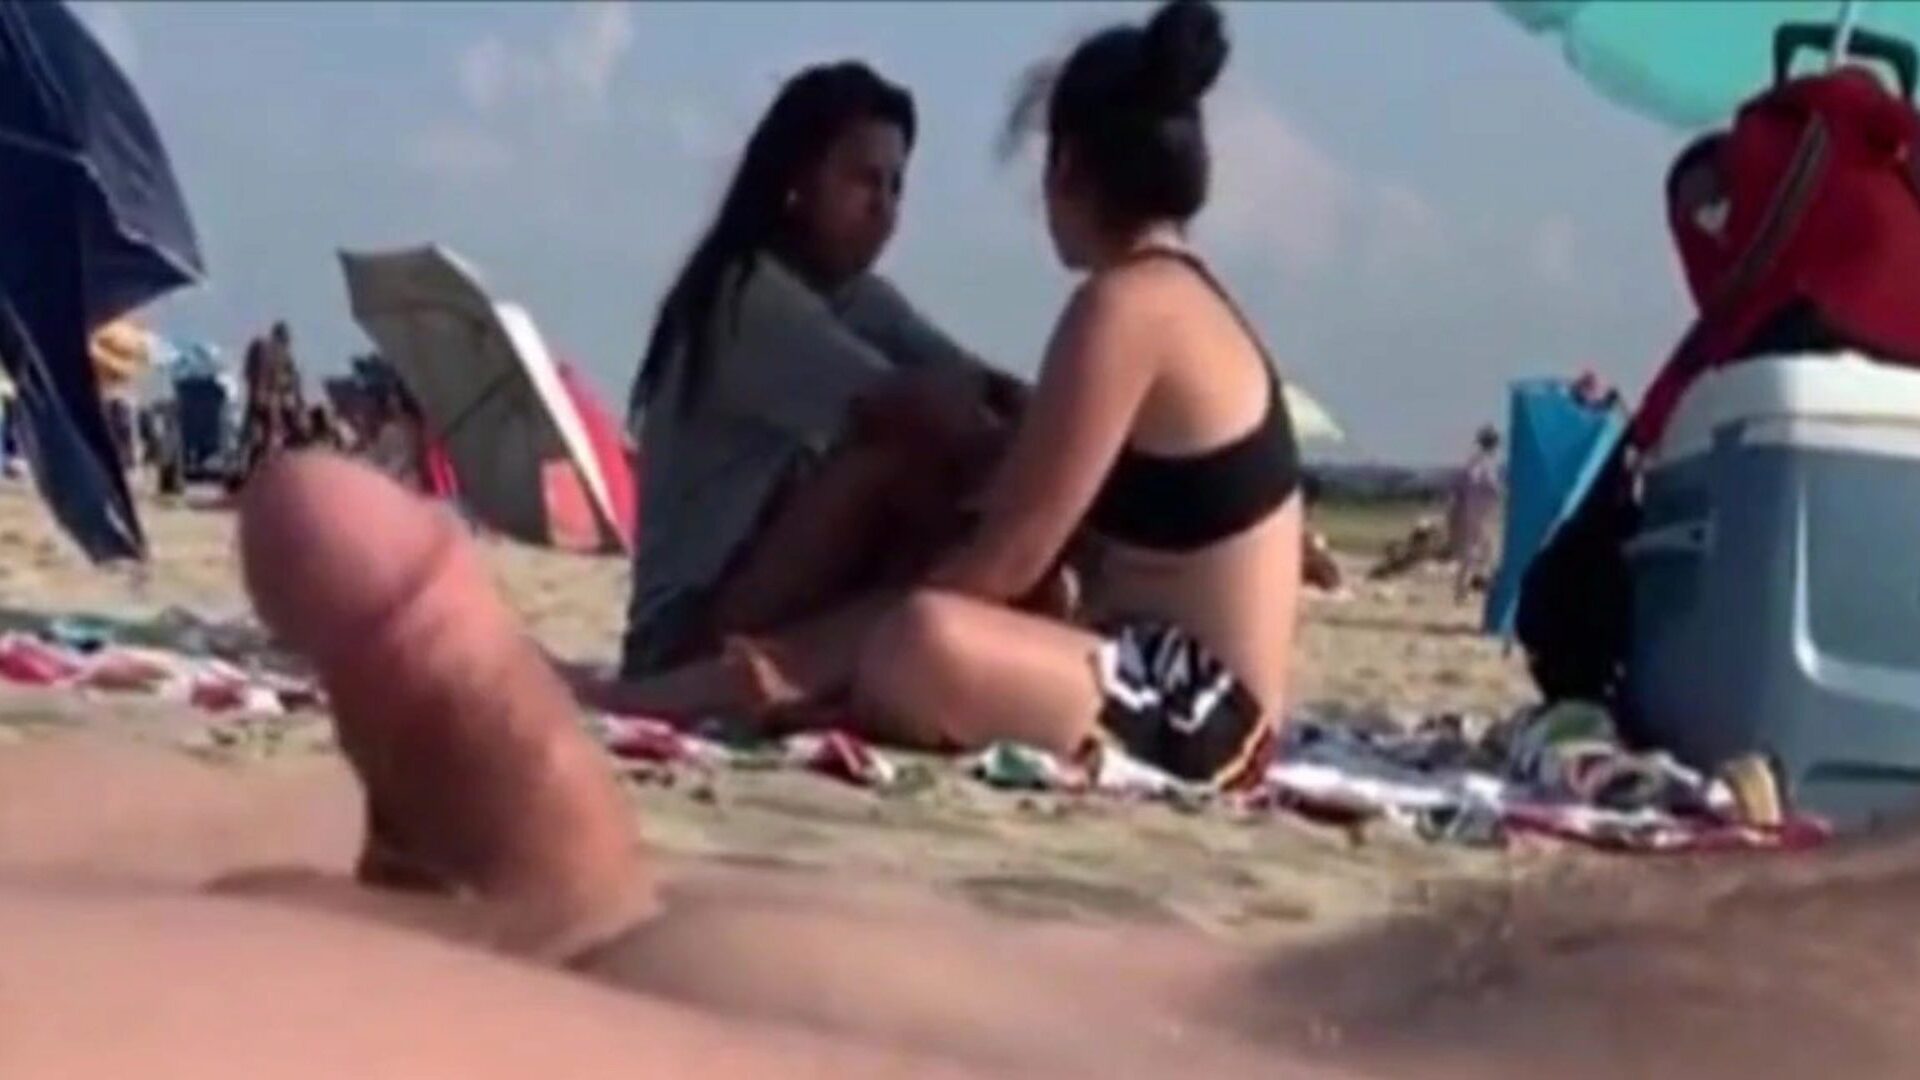 dos chicas miran mi vara de hombre en una playa pública dos chicas me atienden a mi perilla déjalas ir ..